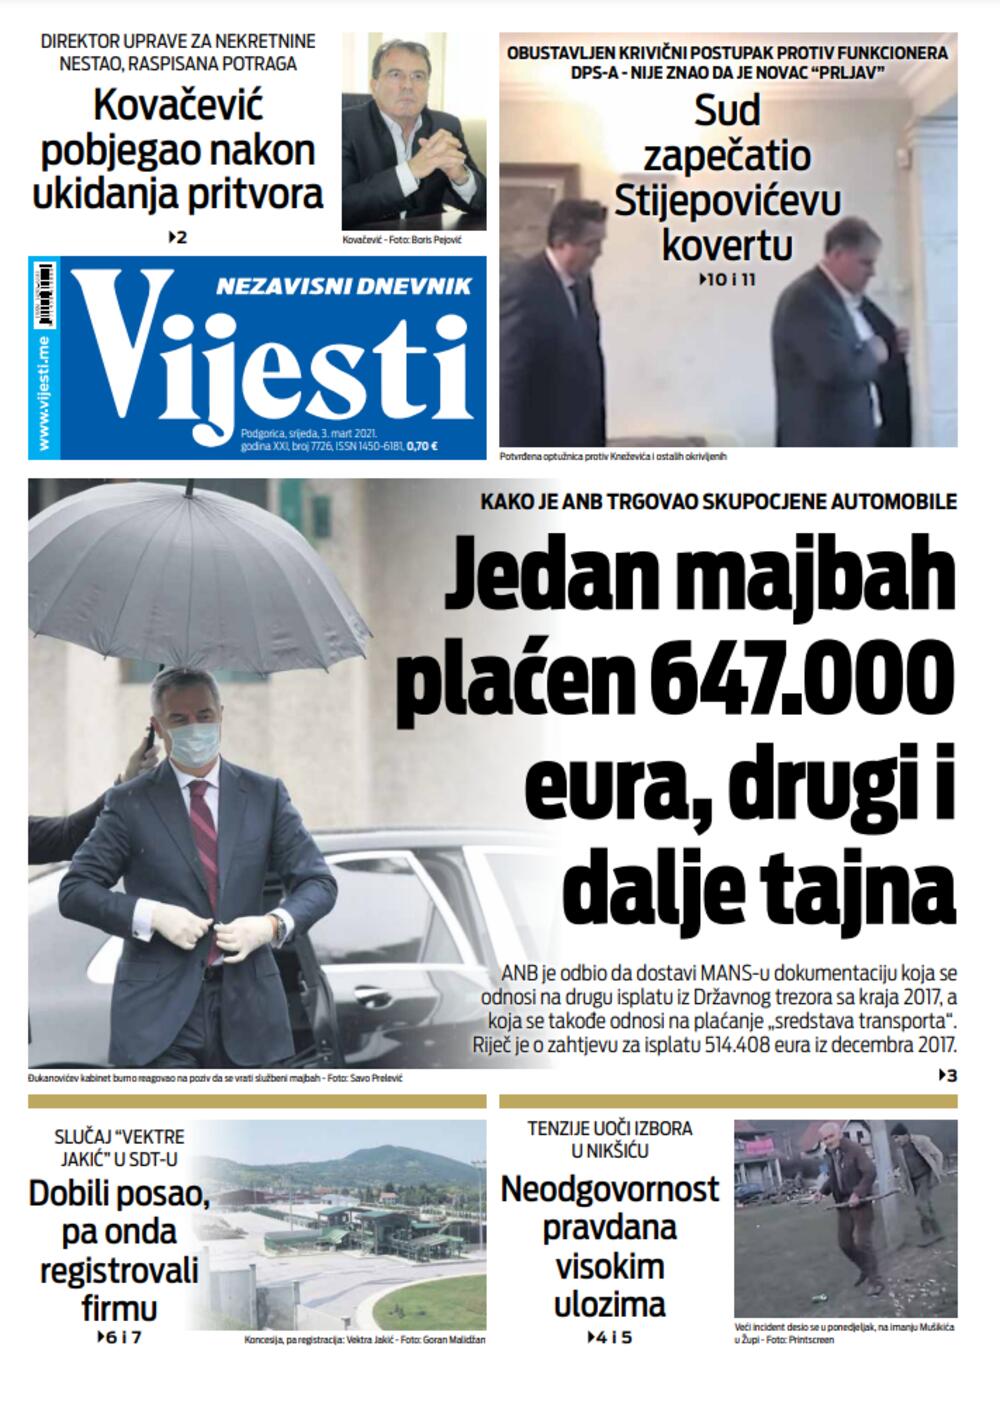 Naslovna strana "Vijesti" za srijedu 3. mart 2021. godine, Foto: Vijesti